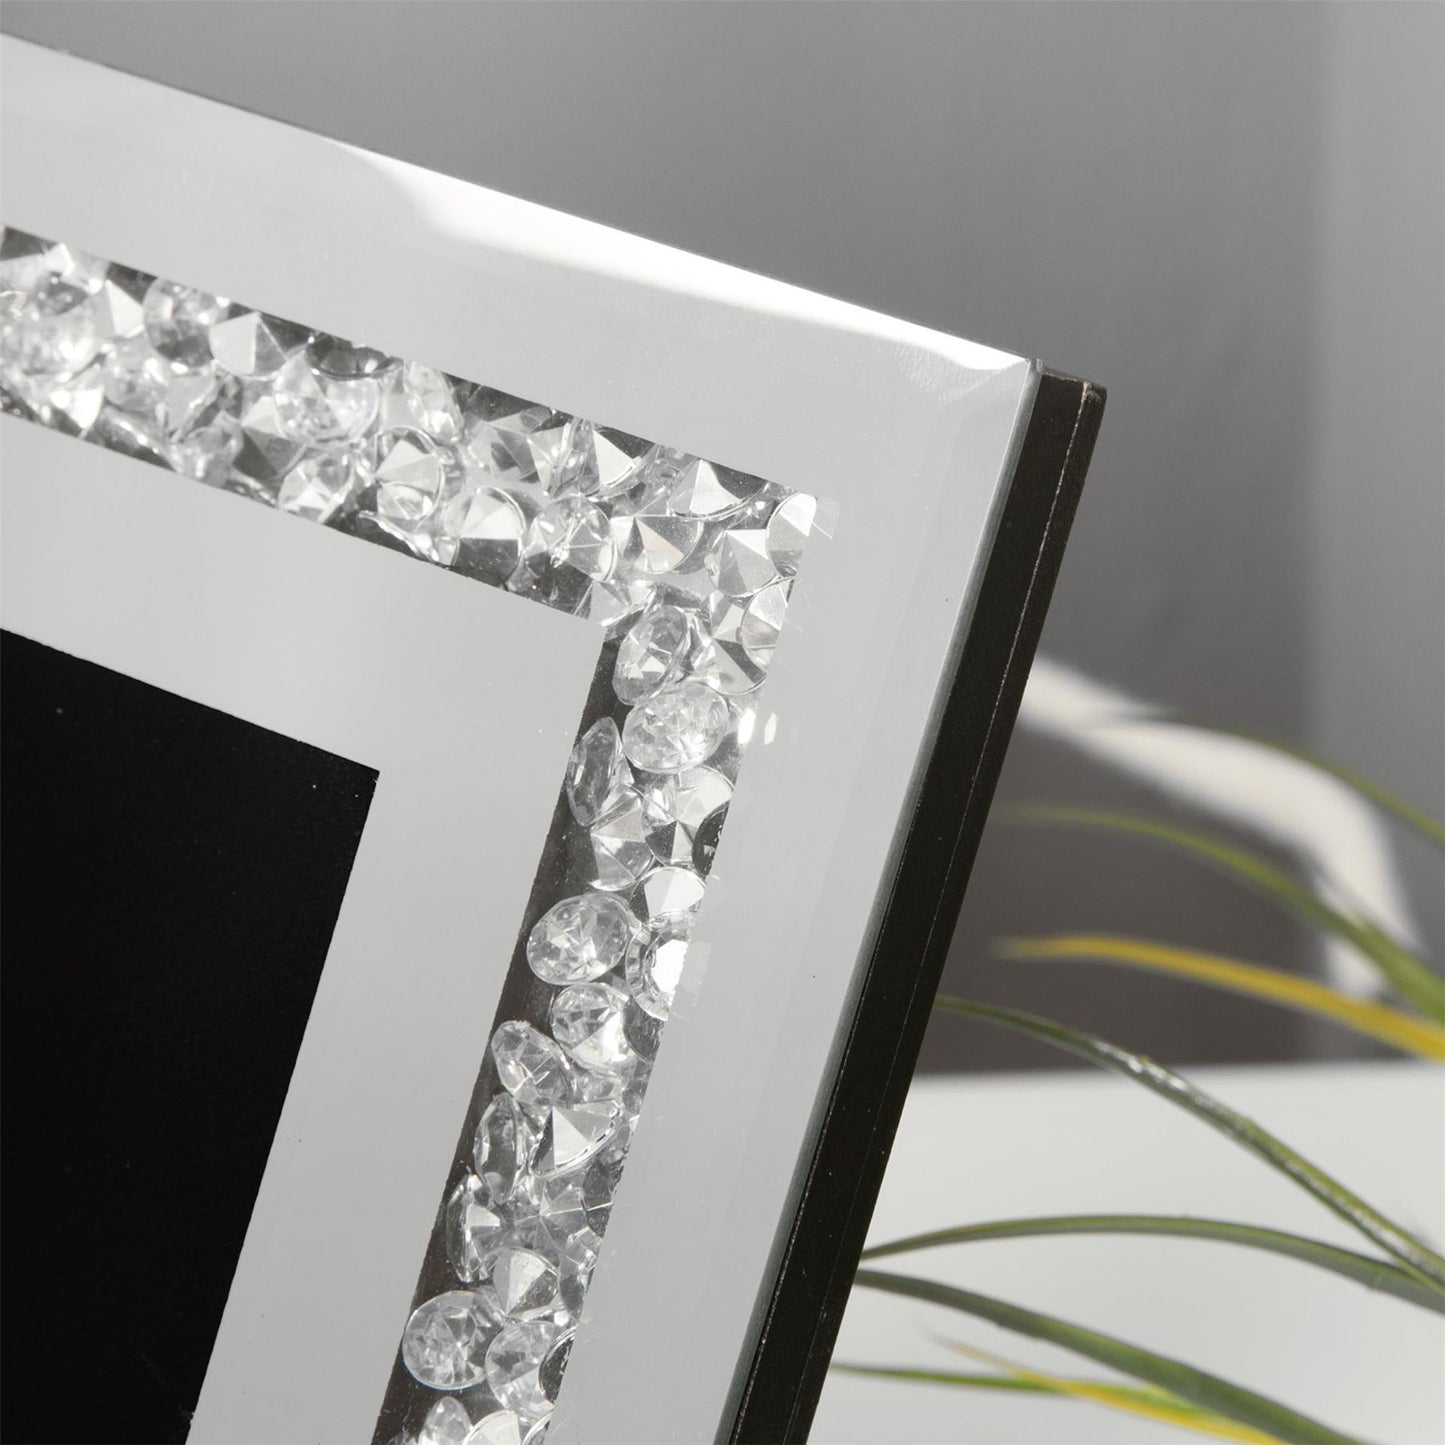 Hestia Mirror Glass with Crystal Egde Photo Frame 5" x 7"